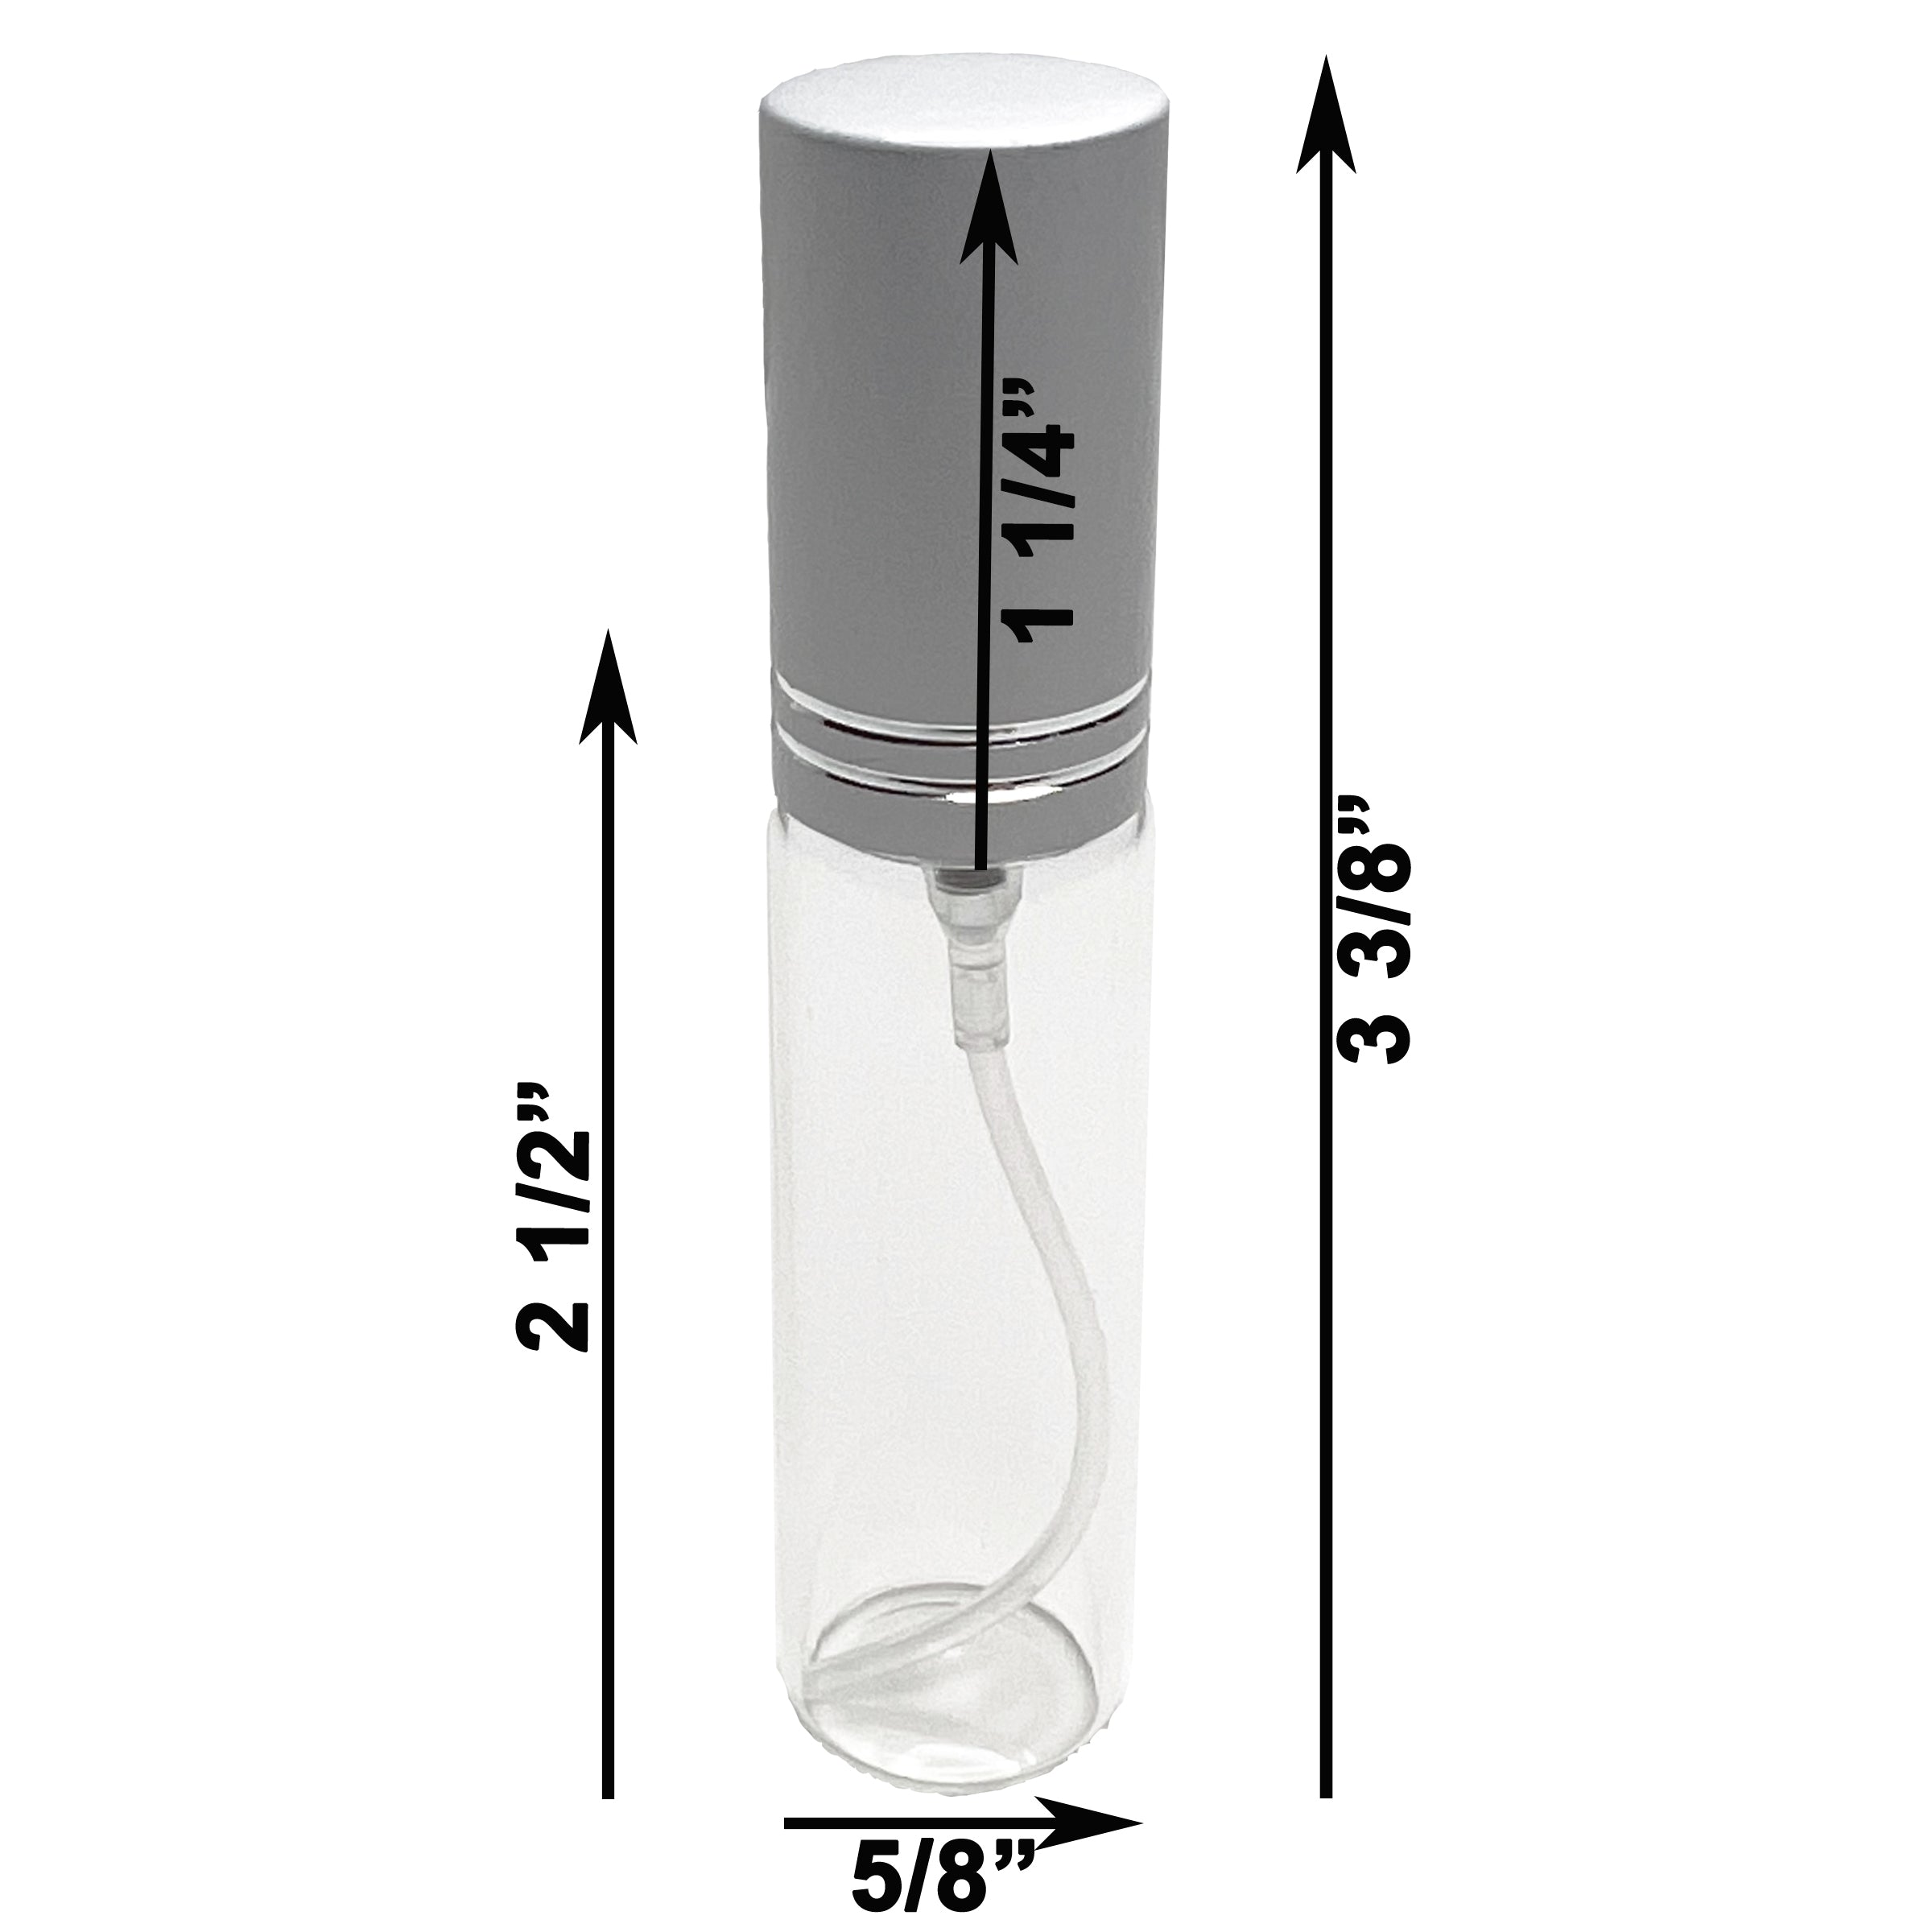 10ml 0.33oz Perfume Glass Spray Bottles Matte Silver Line Cap